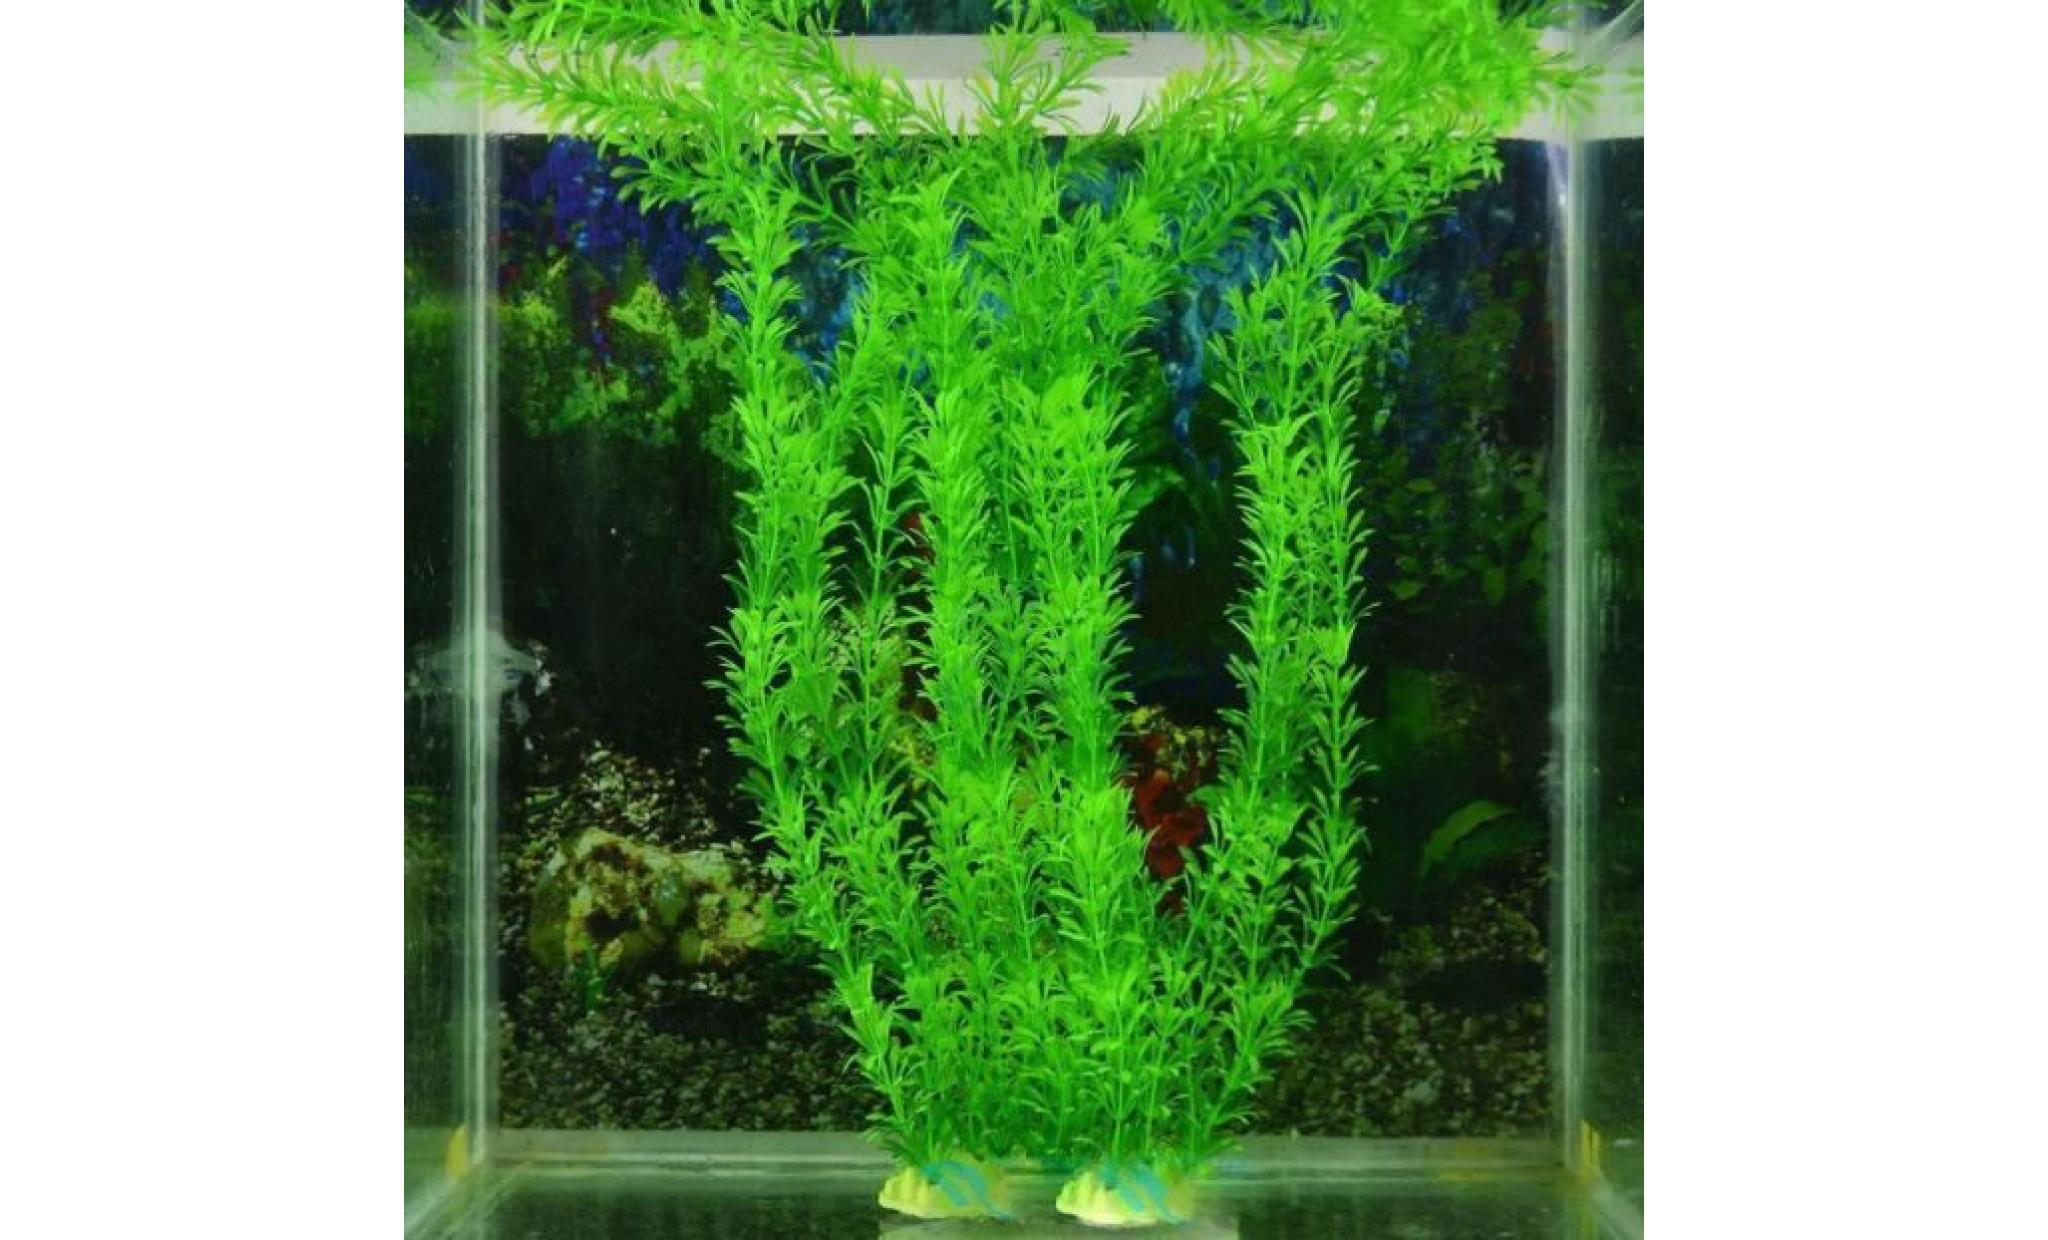 livraison gratuite 13 plastique gazon artificiel réservoir de poissons d'eau décoration@basilesmile052